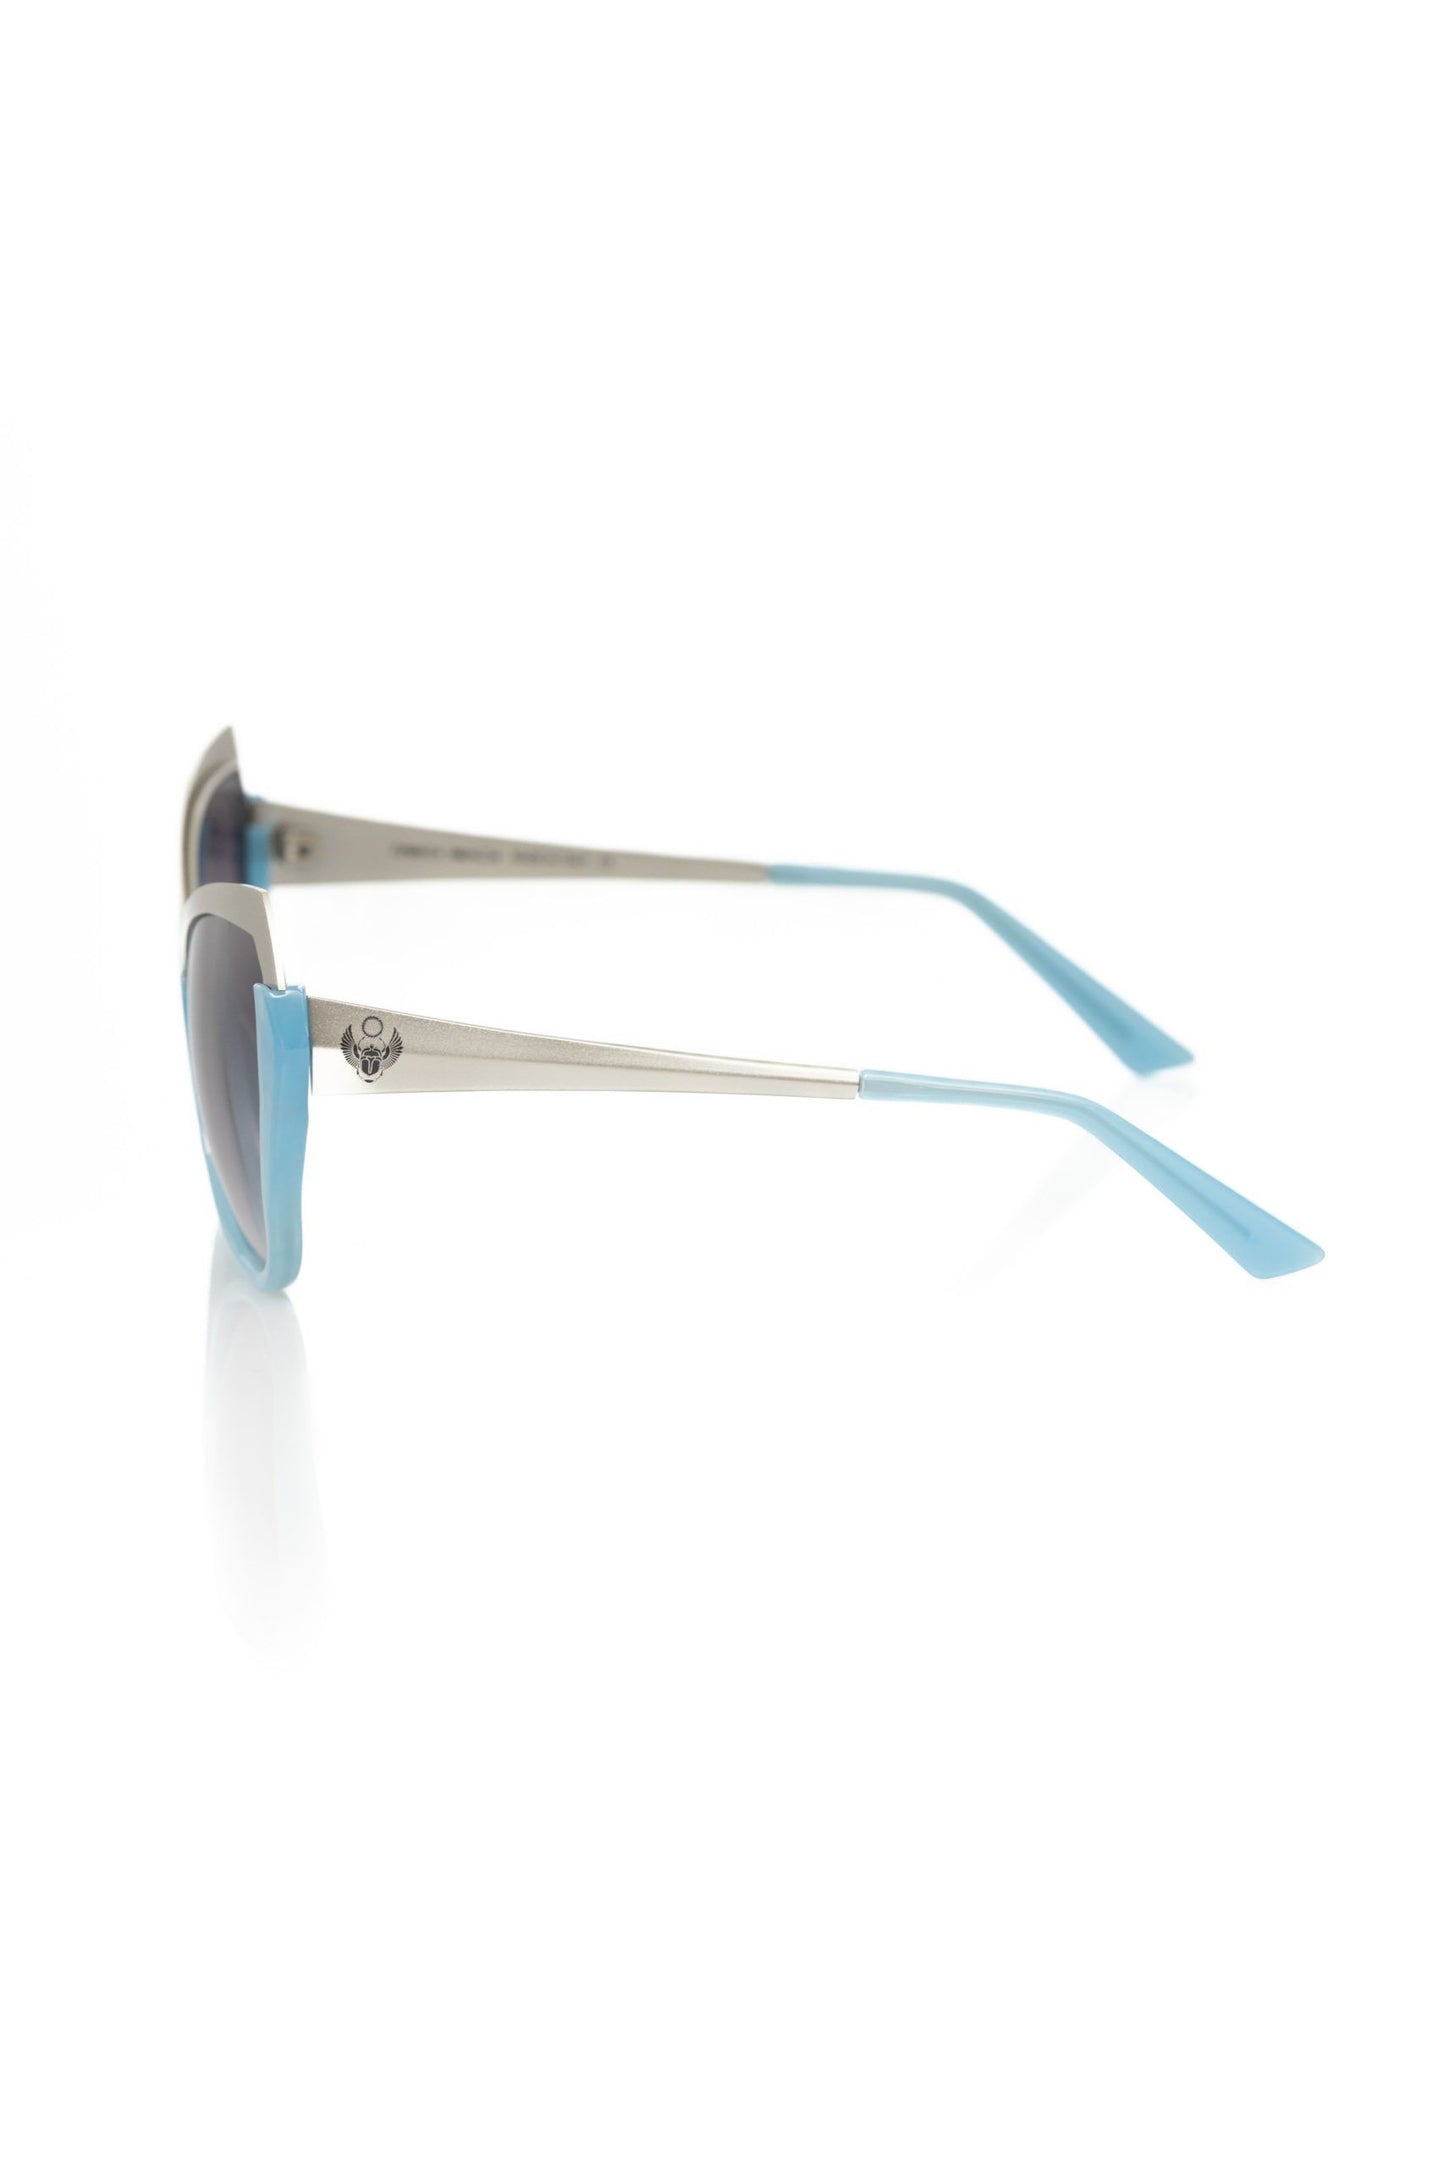 Frankie Morello FRMO-22082 Light Blue Acetate Sunglasses